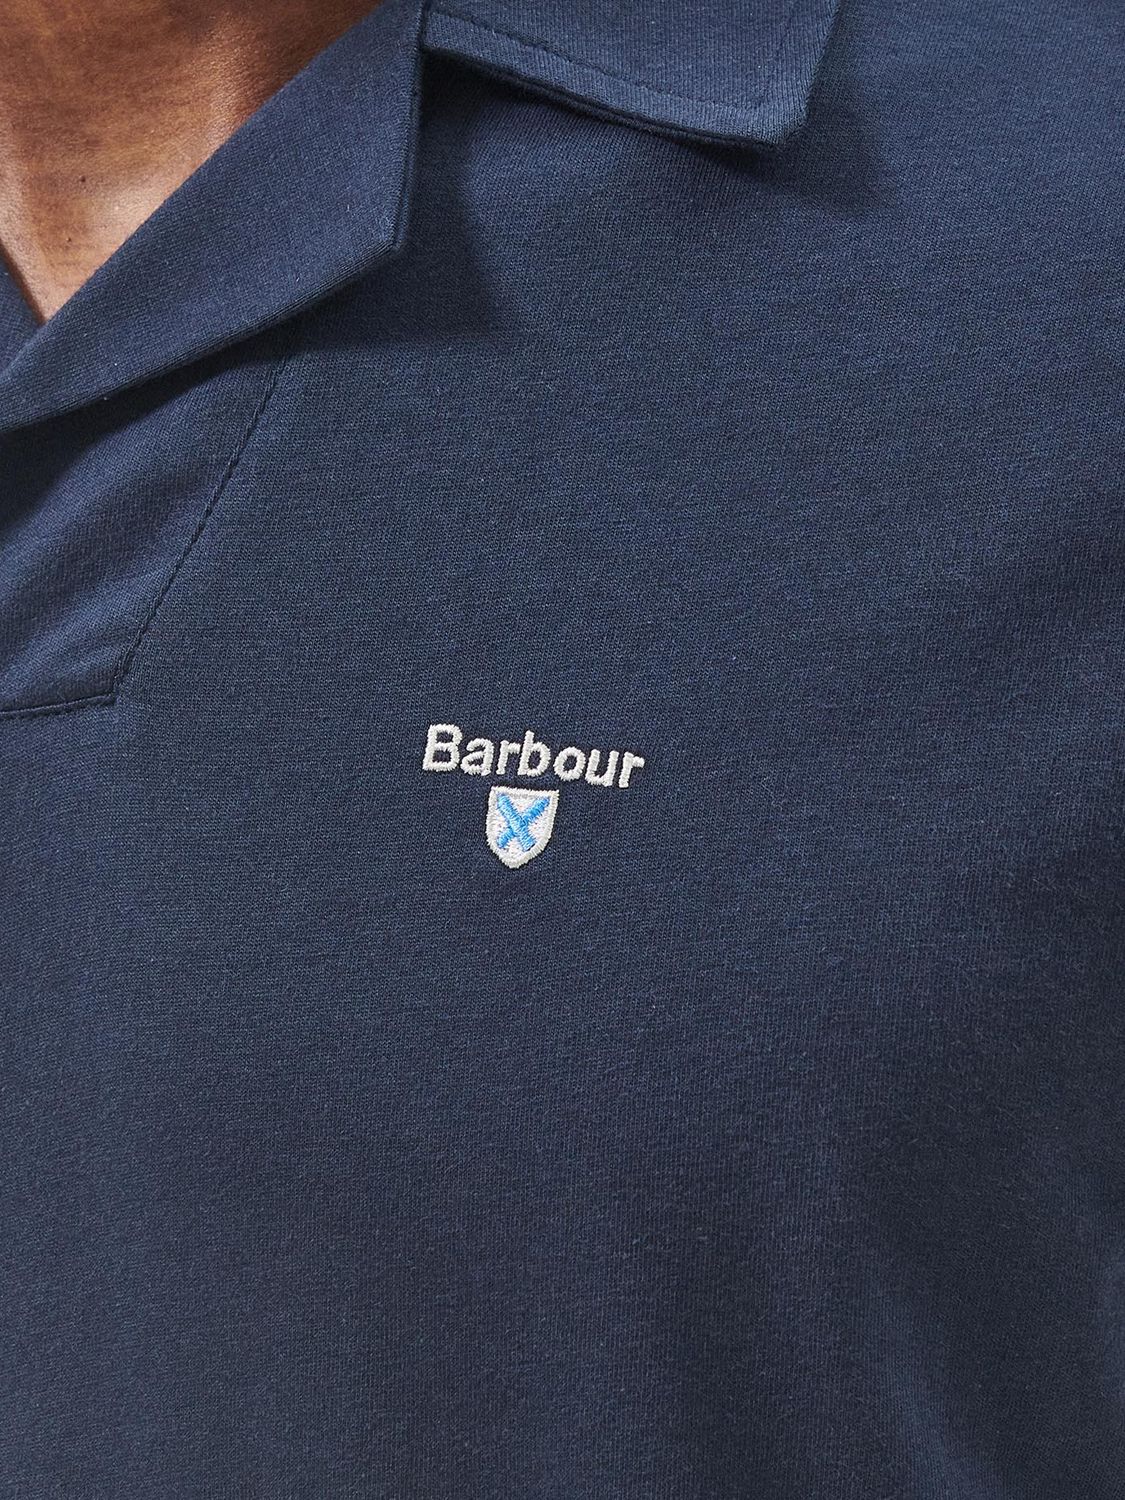 Barbour Open Collar Short Sleeve Polo Shirt, Navy, S